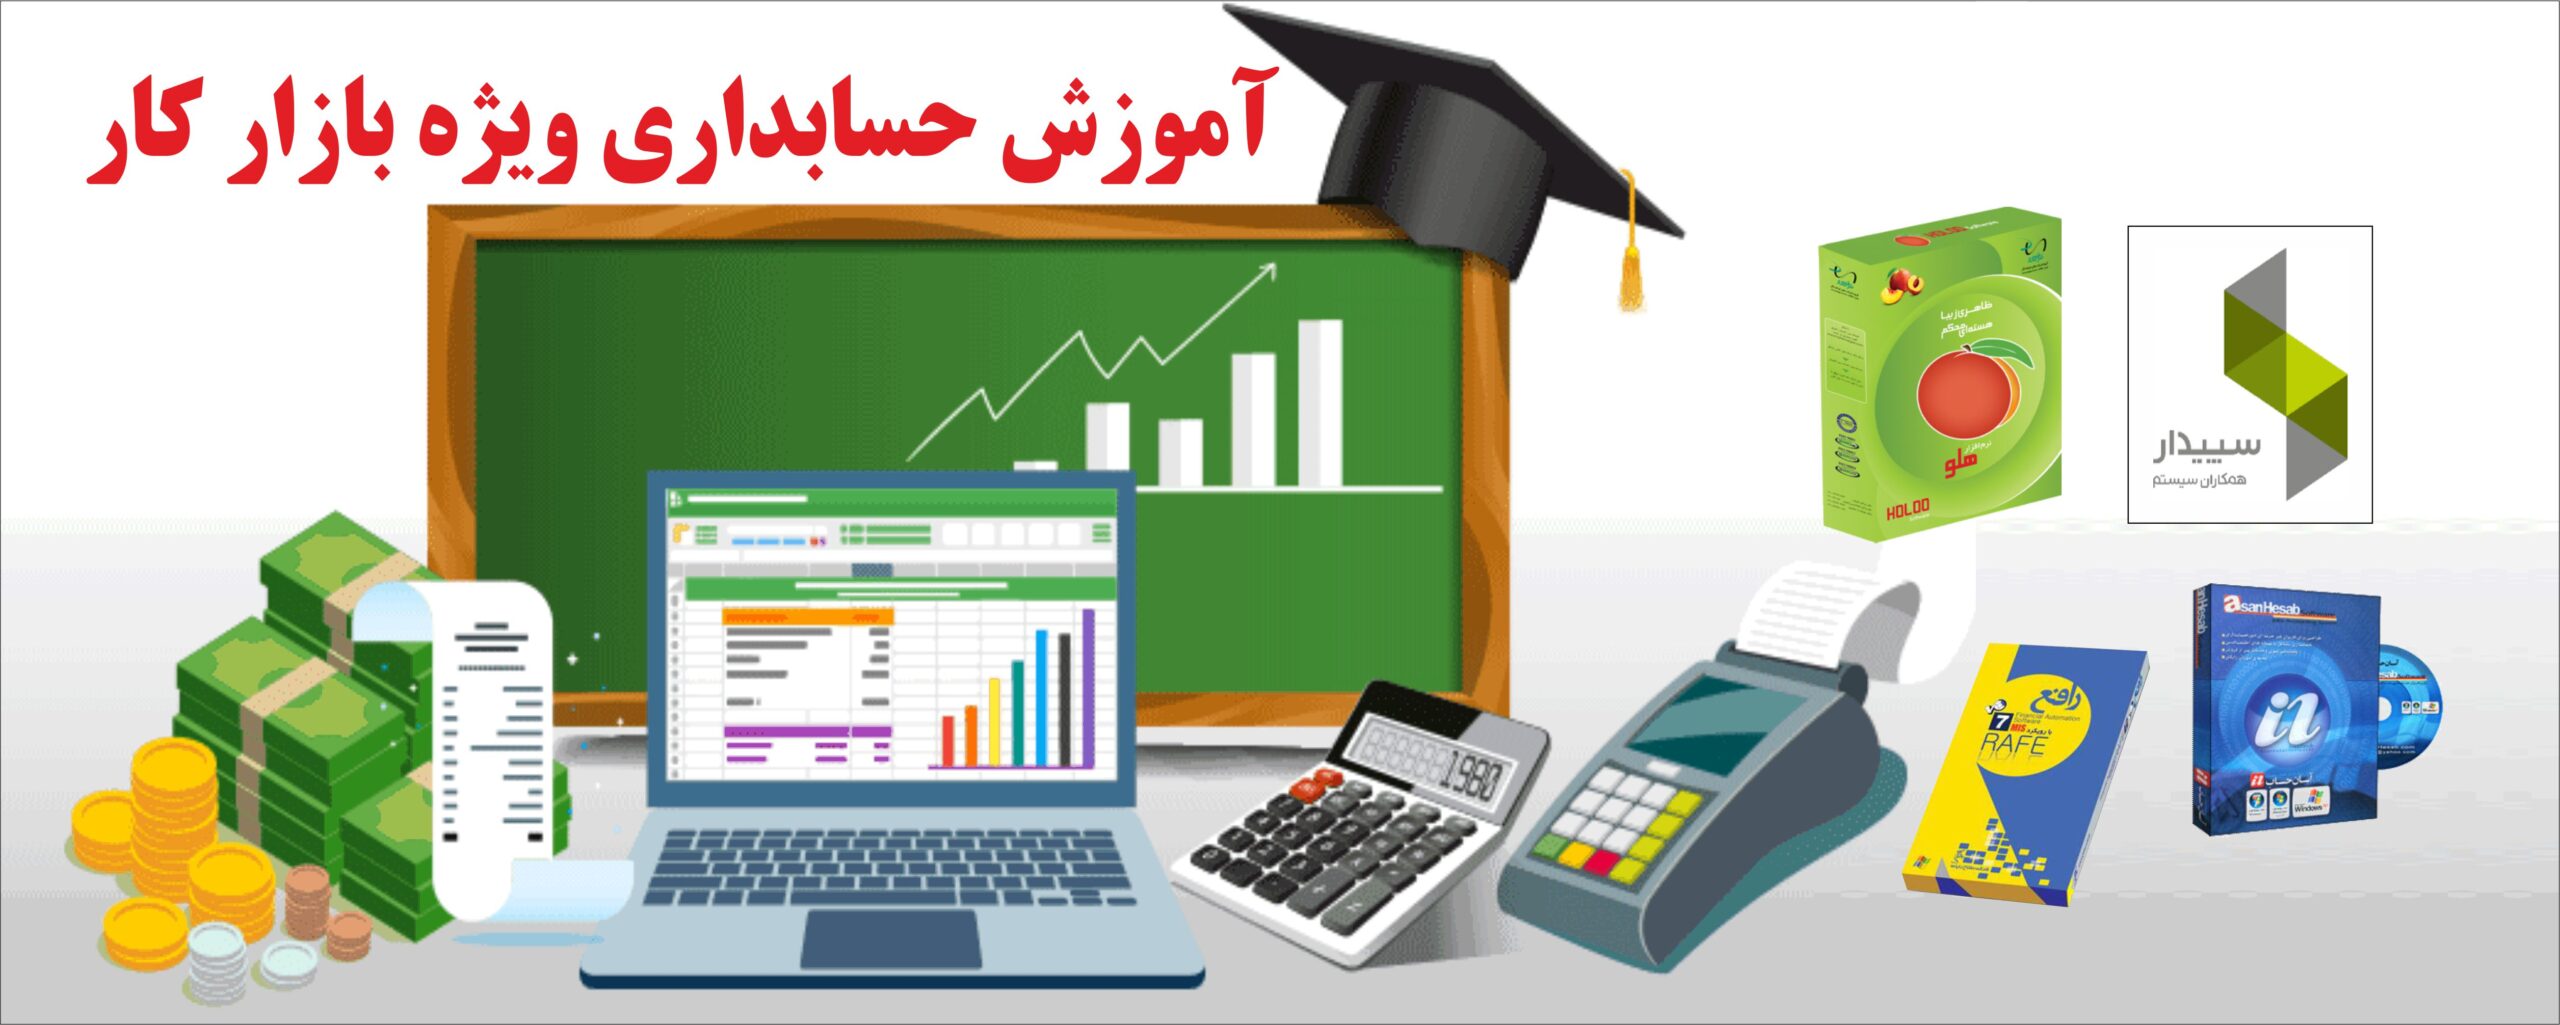 آموزشگاه حسابداری تهرانسر